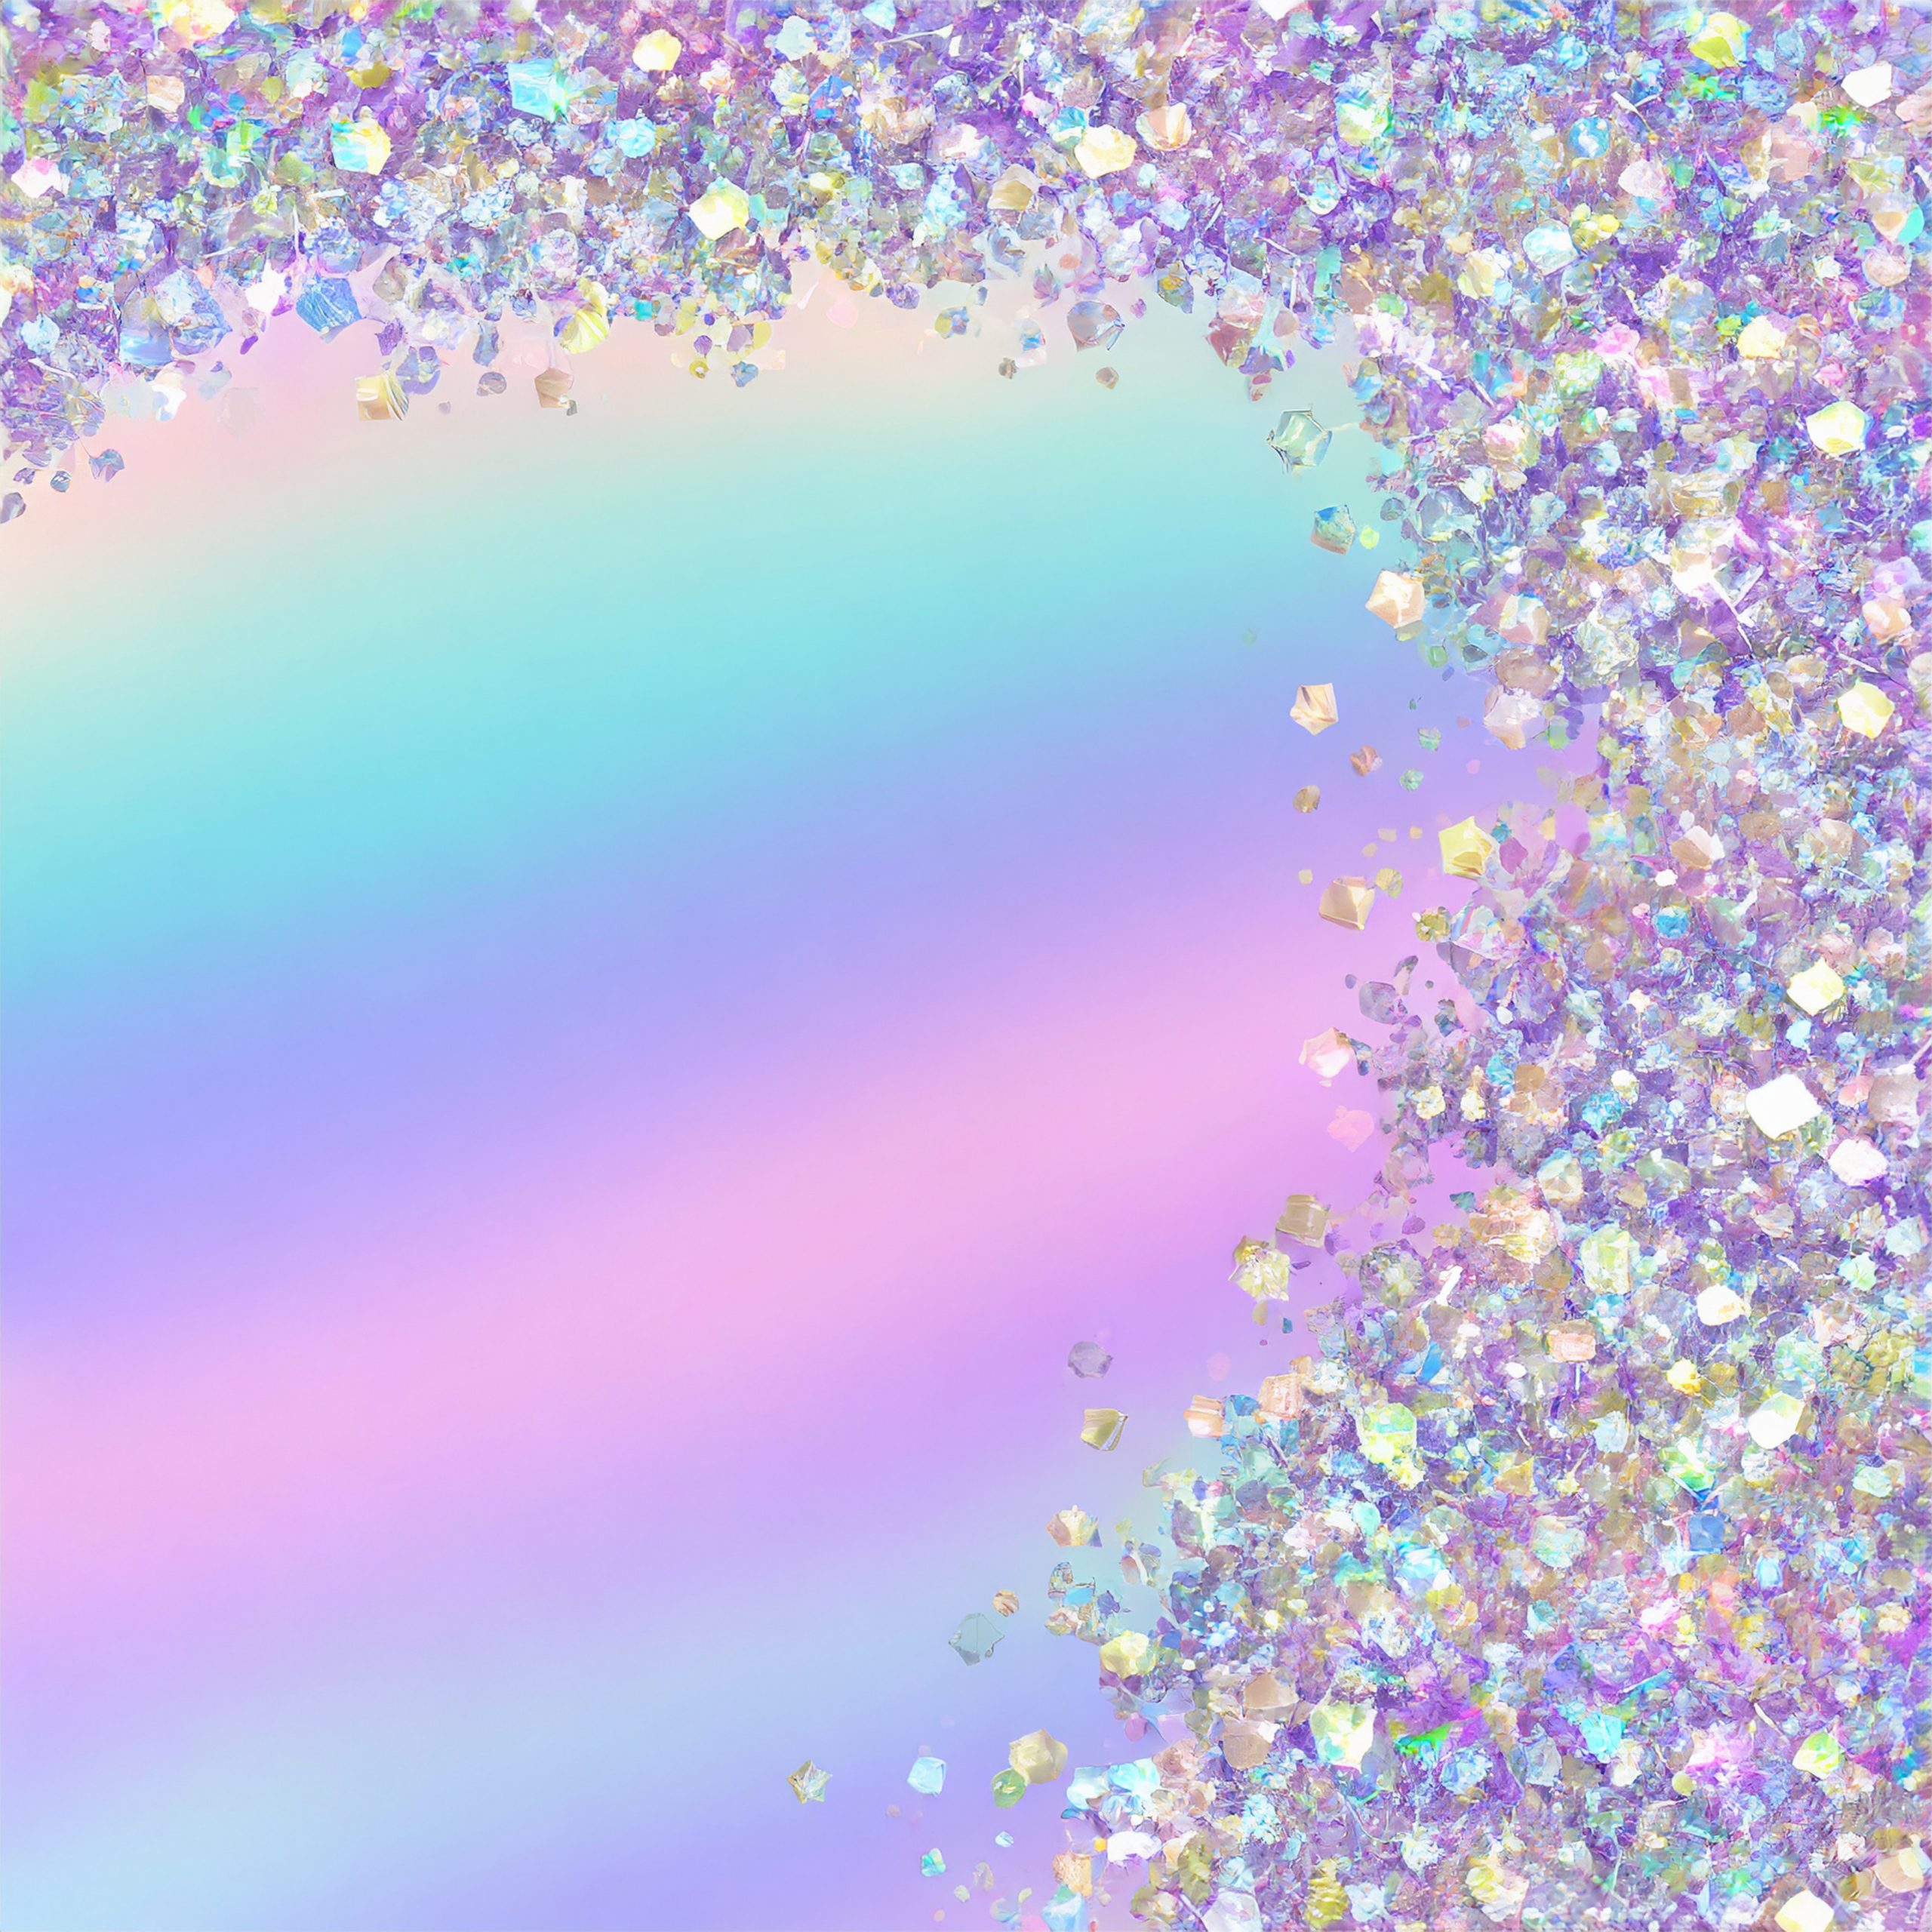 Cristales brillantes de colores sobre un fondo de acuarela difuminada en tonos pastel